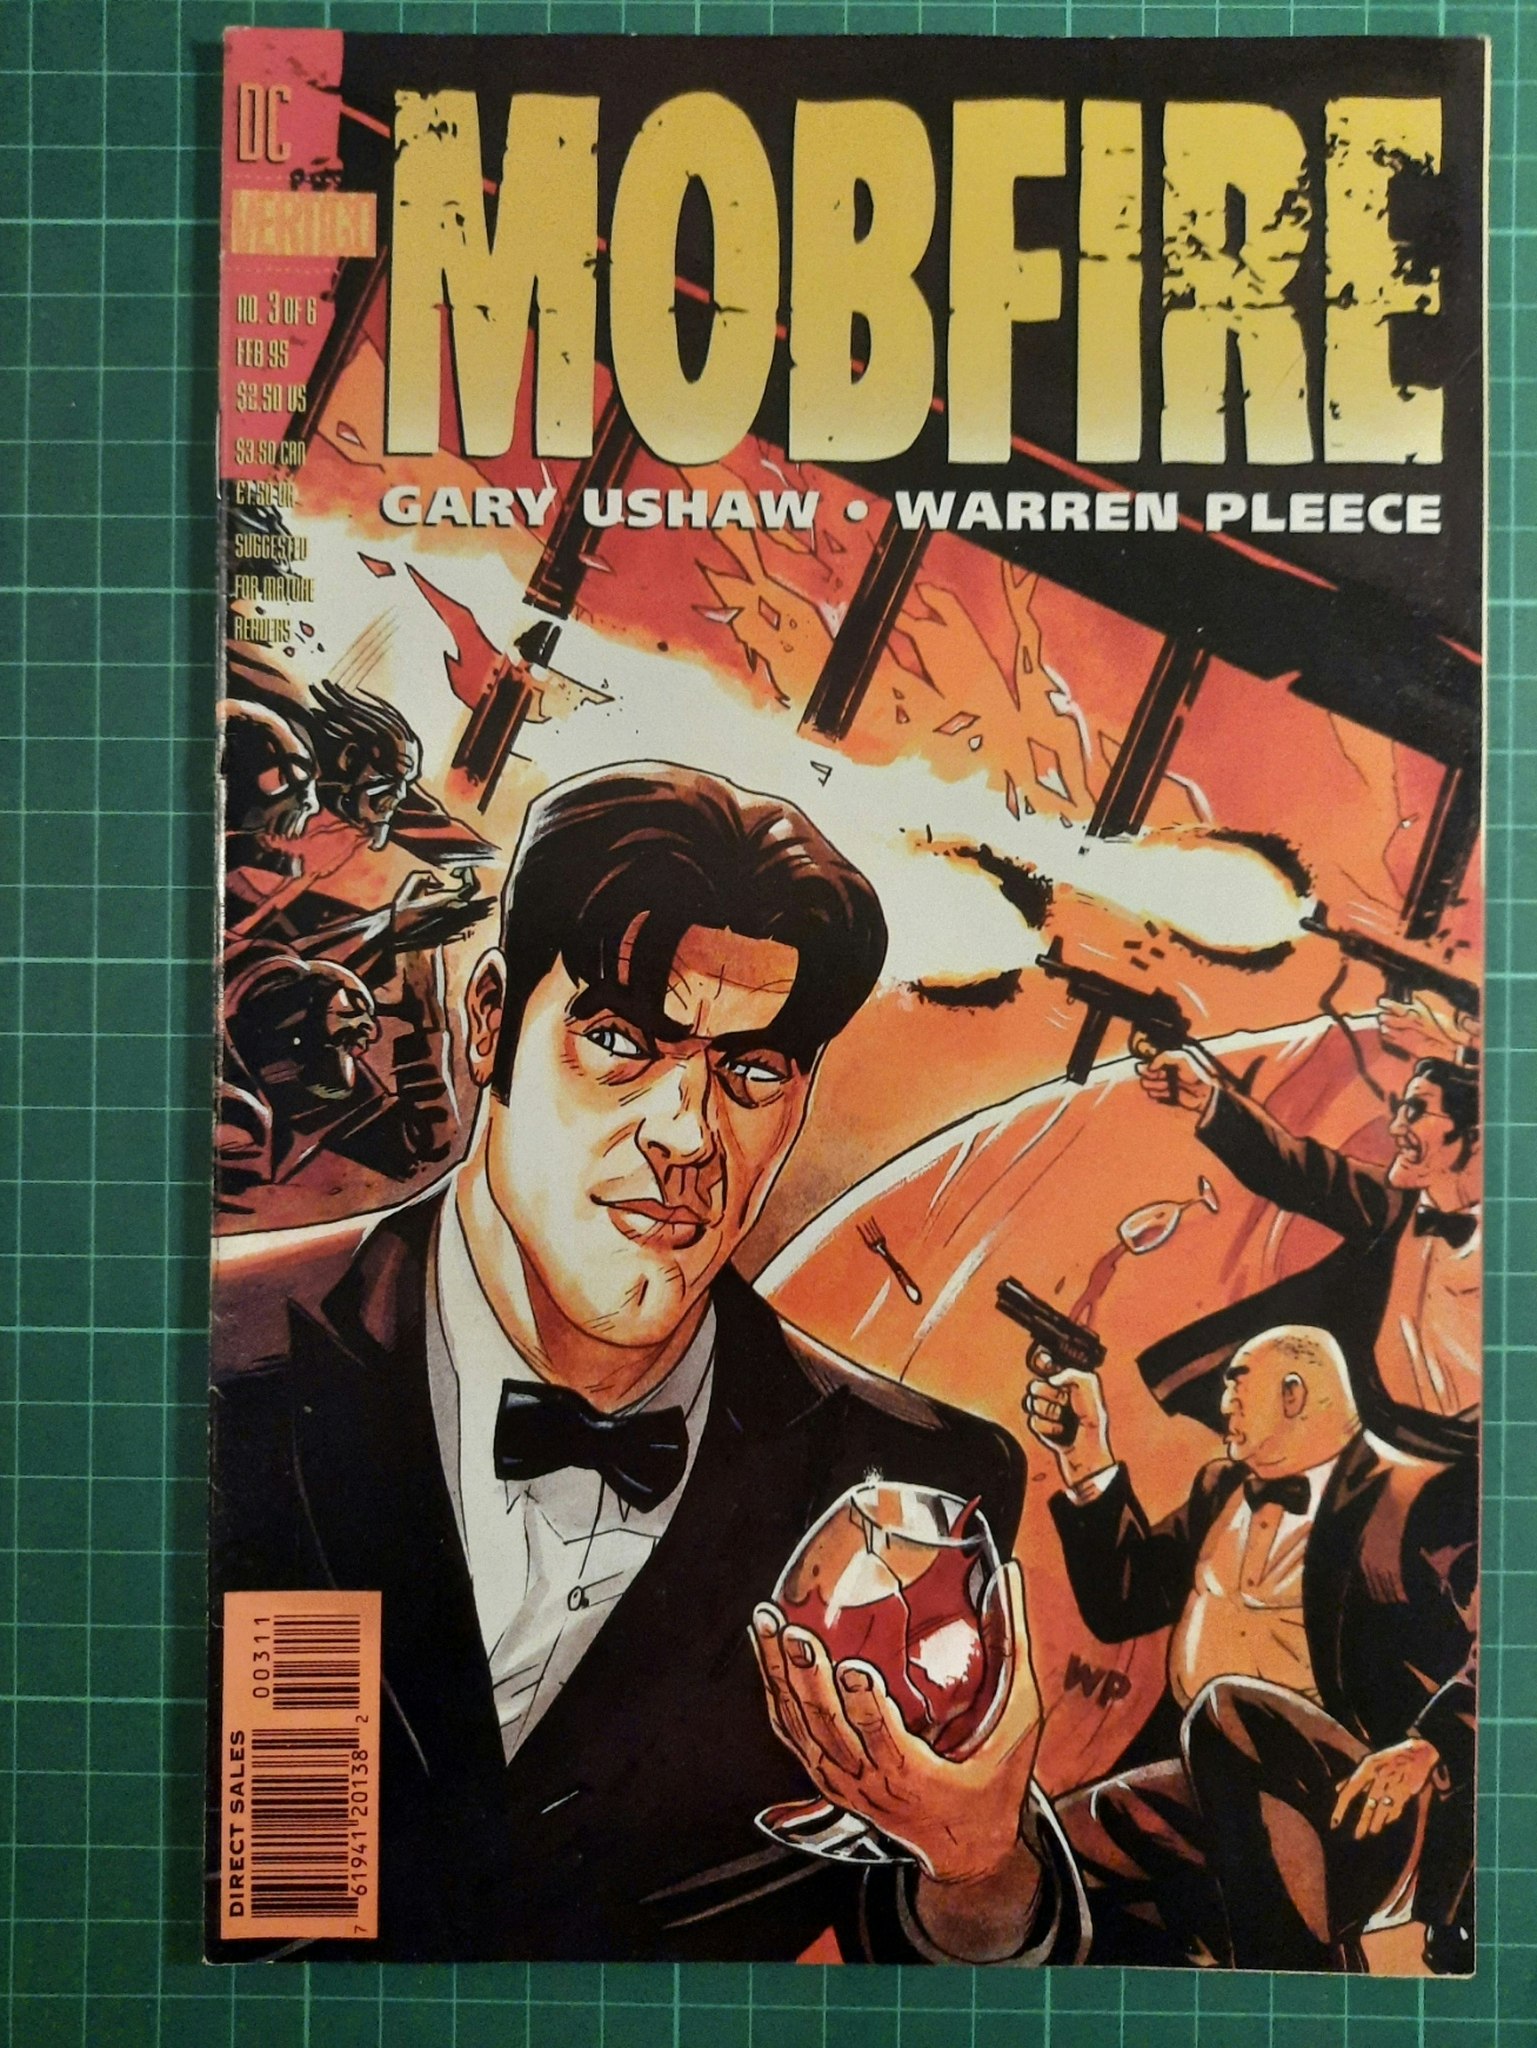 Mobfire #3 av 6